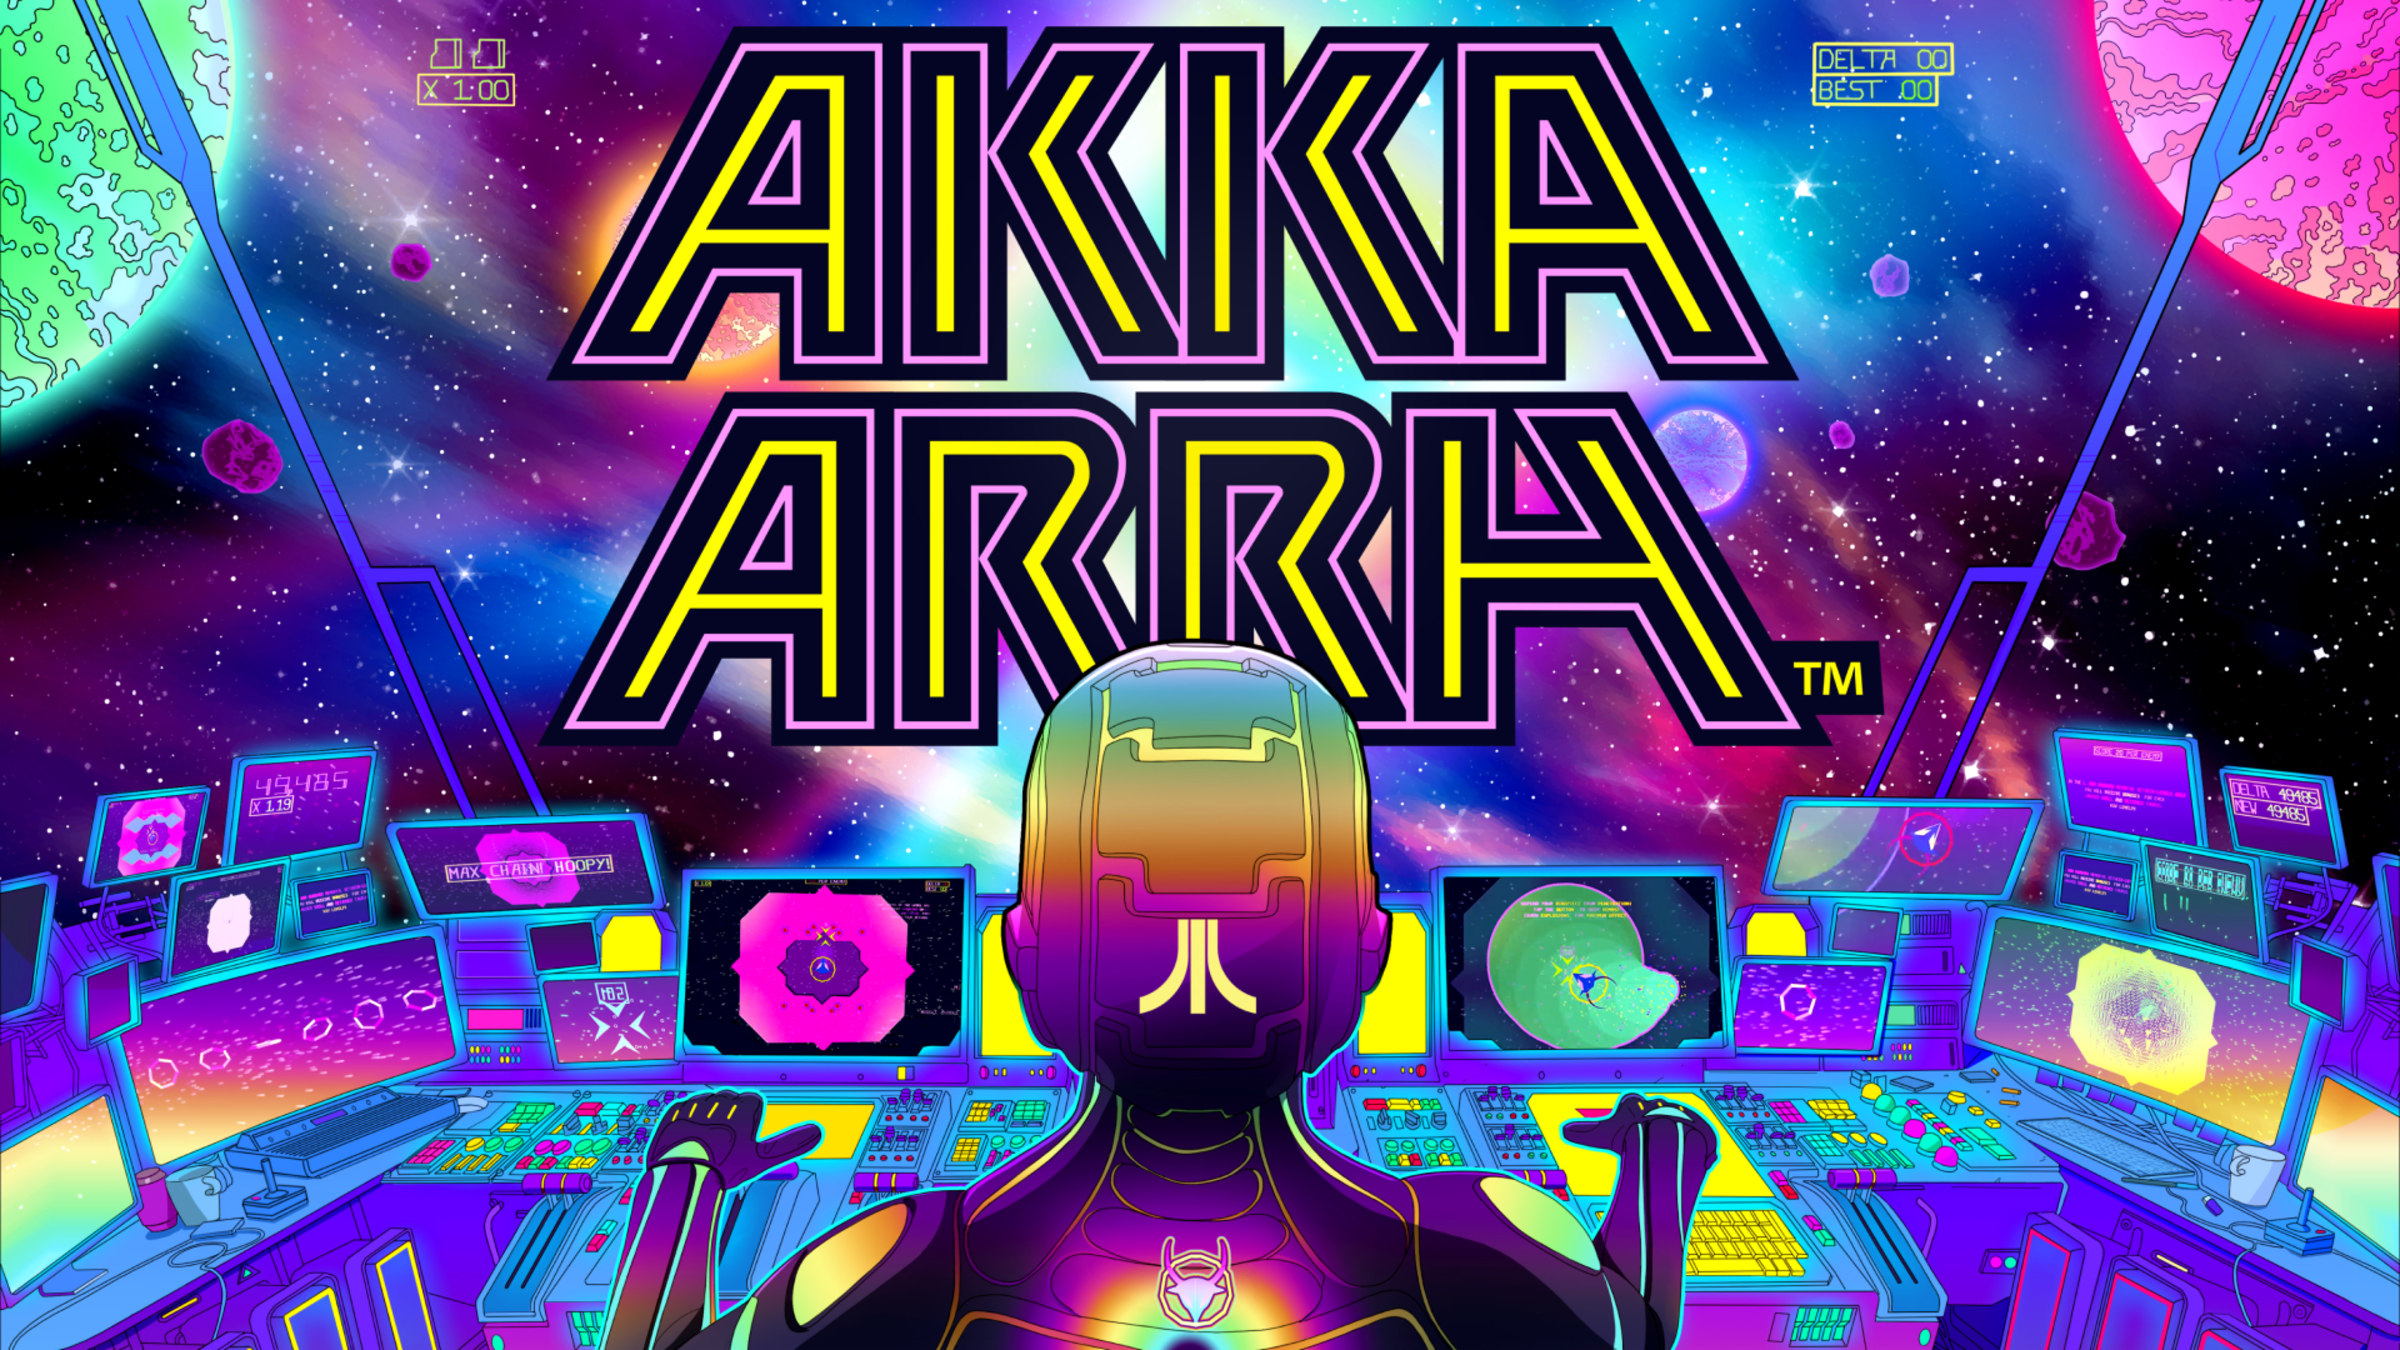 Akka Arrh Nintendo Switch Version Full Game Setup Free Download